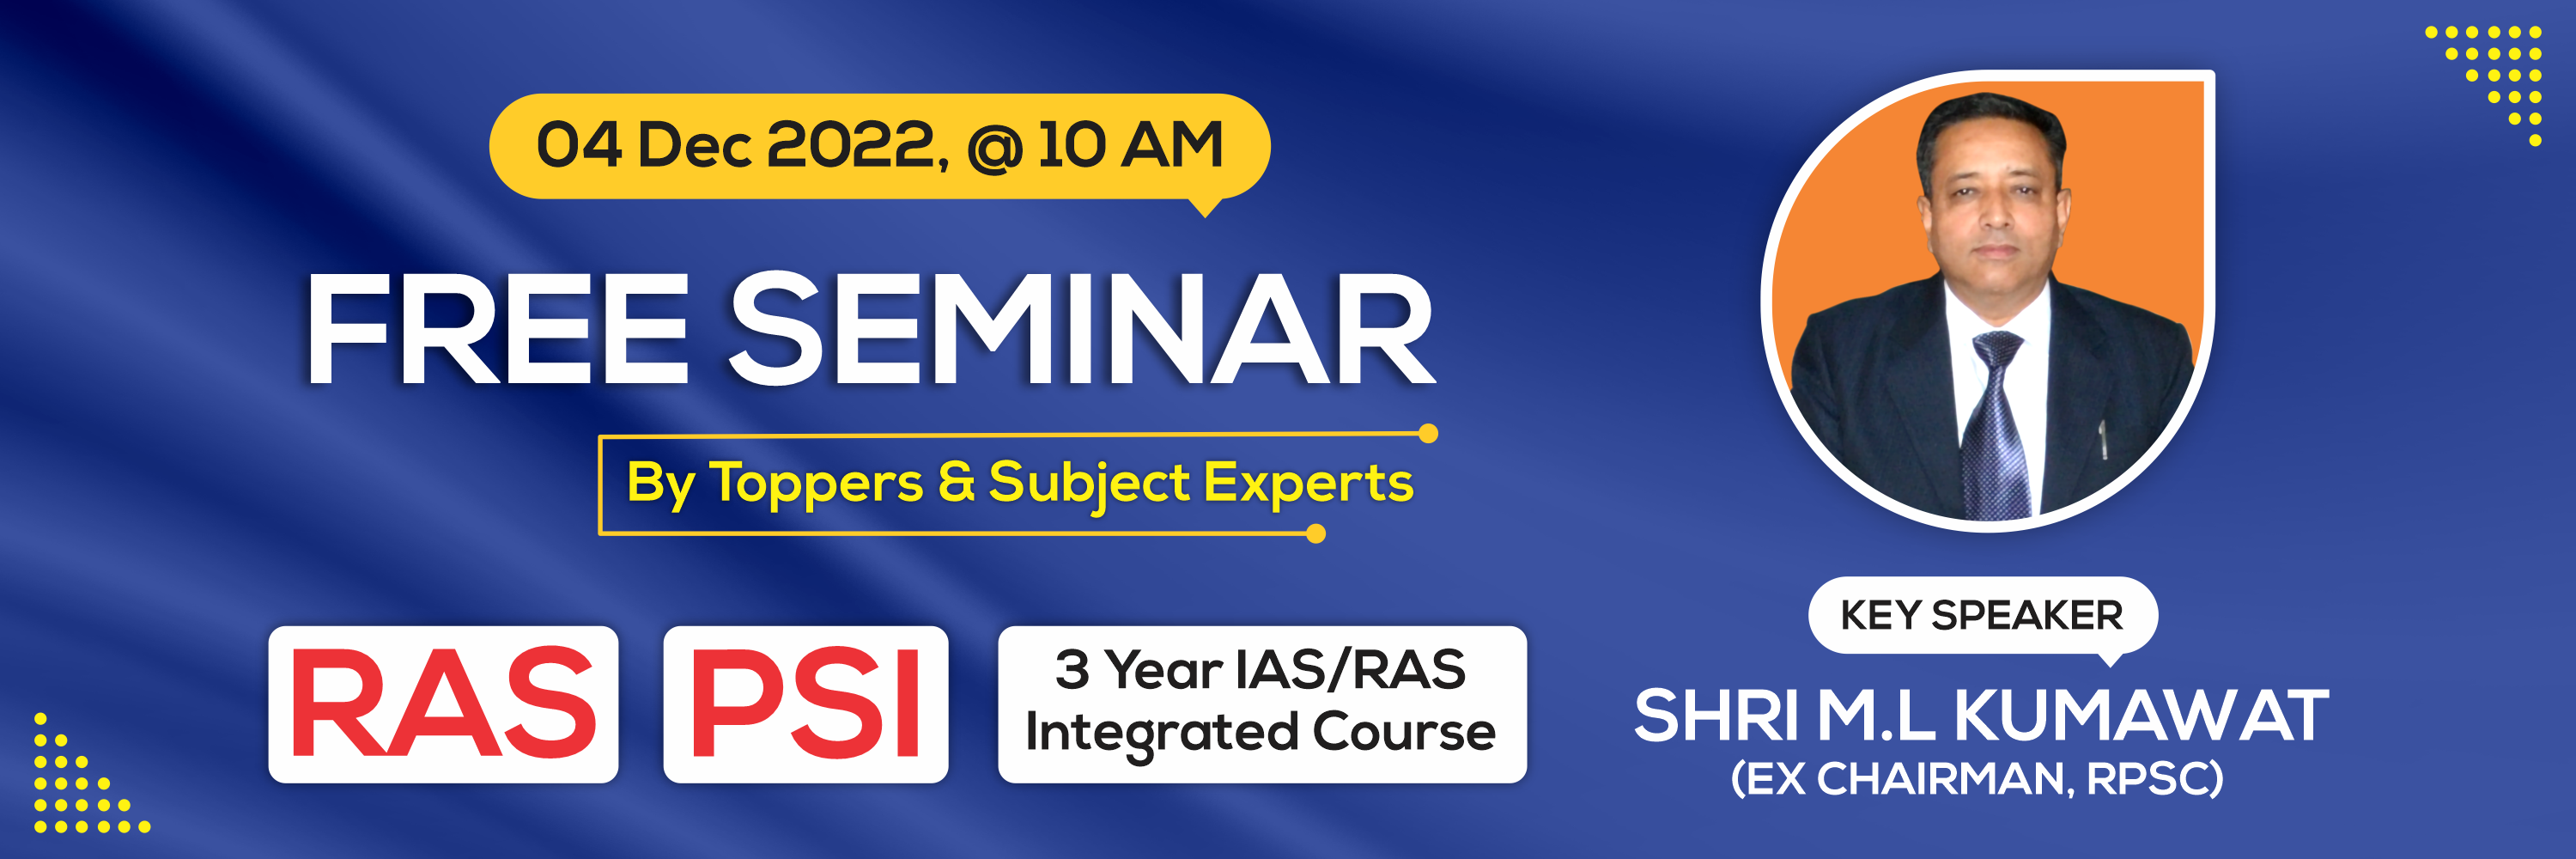 free seminar for RAS, PSI, seminar key speaker Shri M.L. Kumawat (Ex. Chairman RPSC)